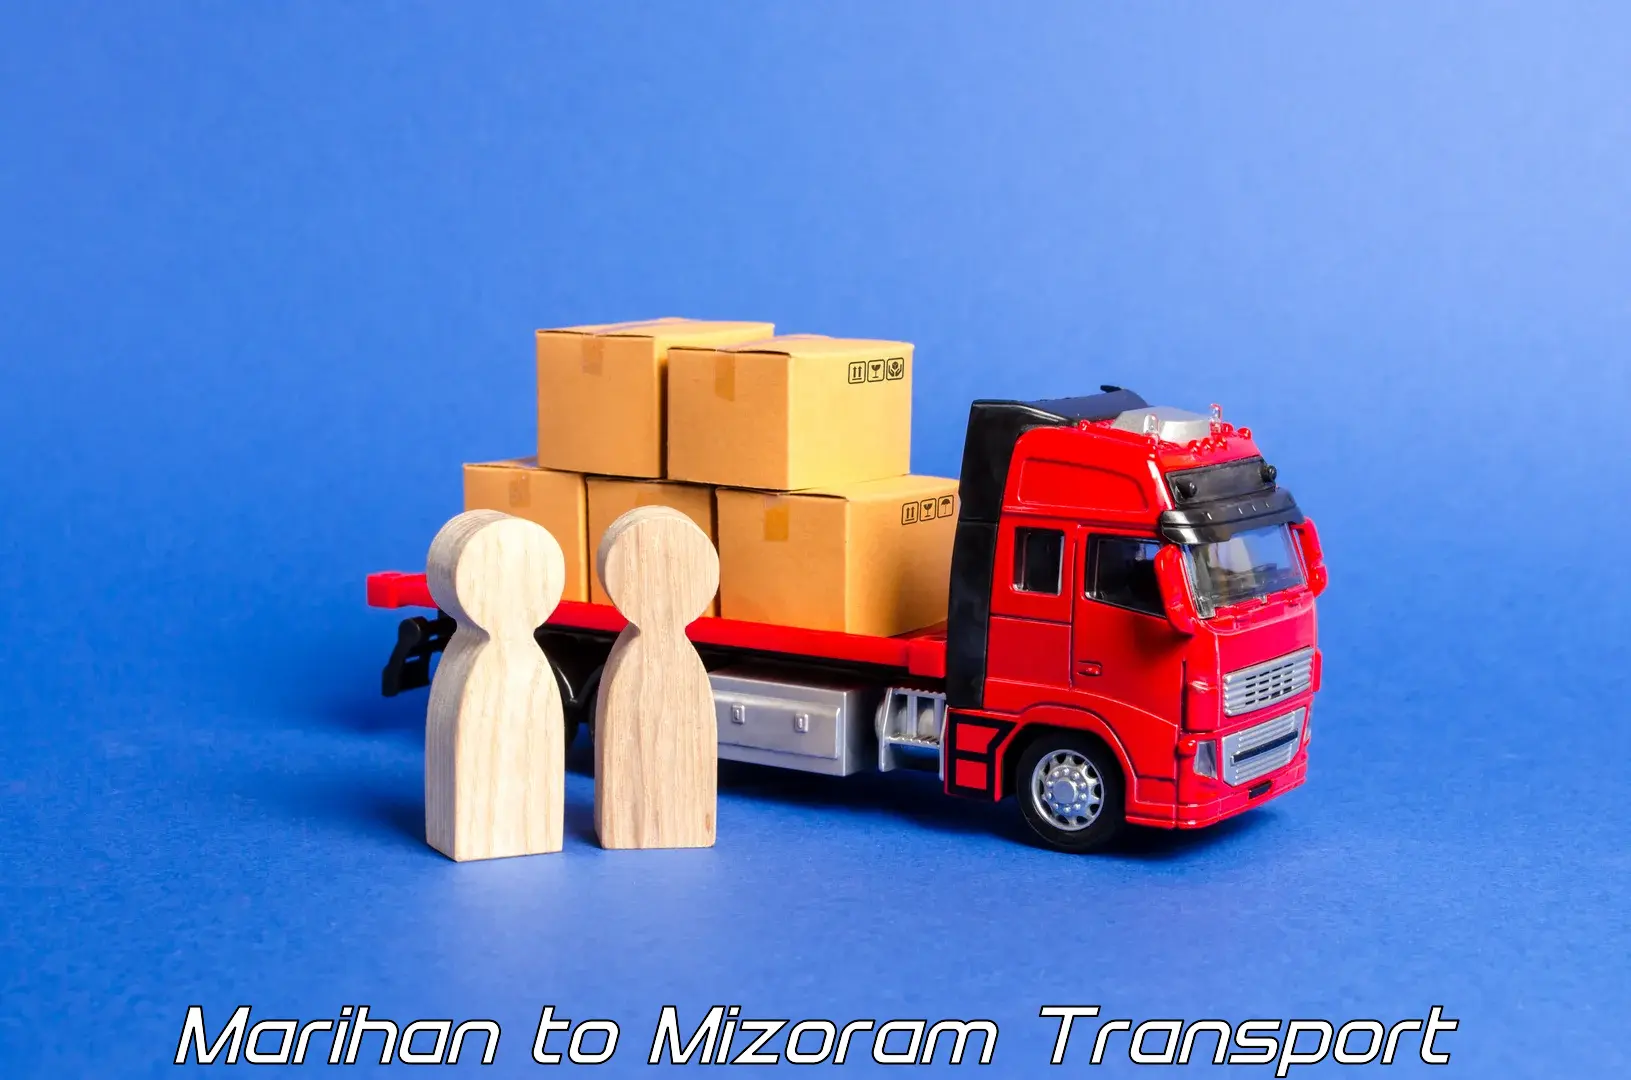 Lorry transport service Marihan to NIT Aizawl